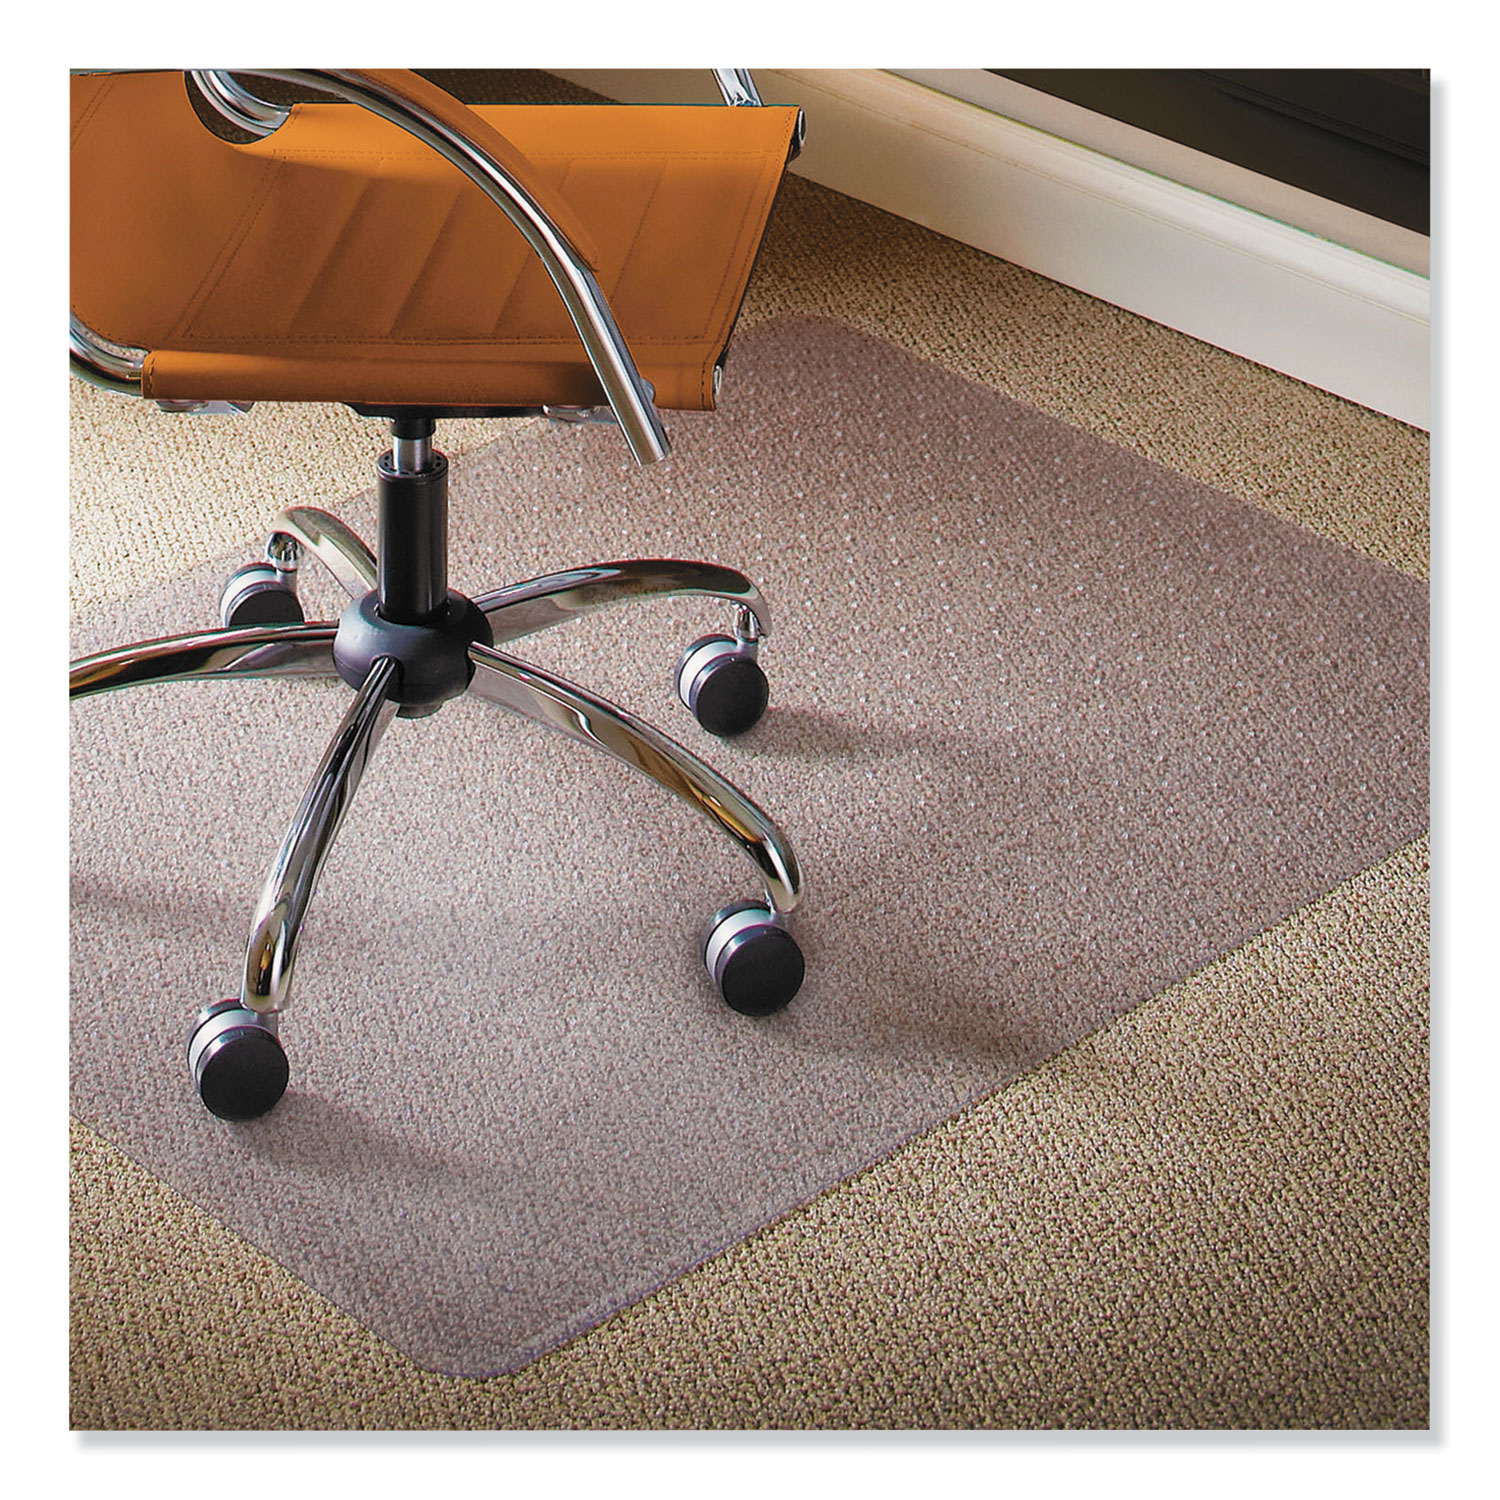 Natural Origins Chair Mat For Carpet 46 X 60 Clear Boss Office